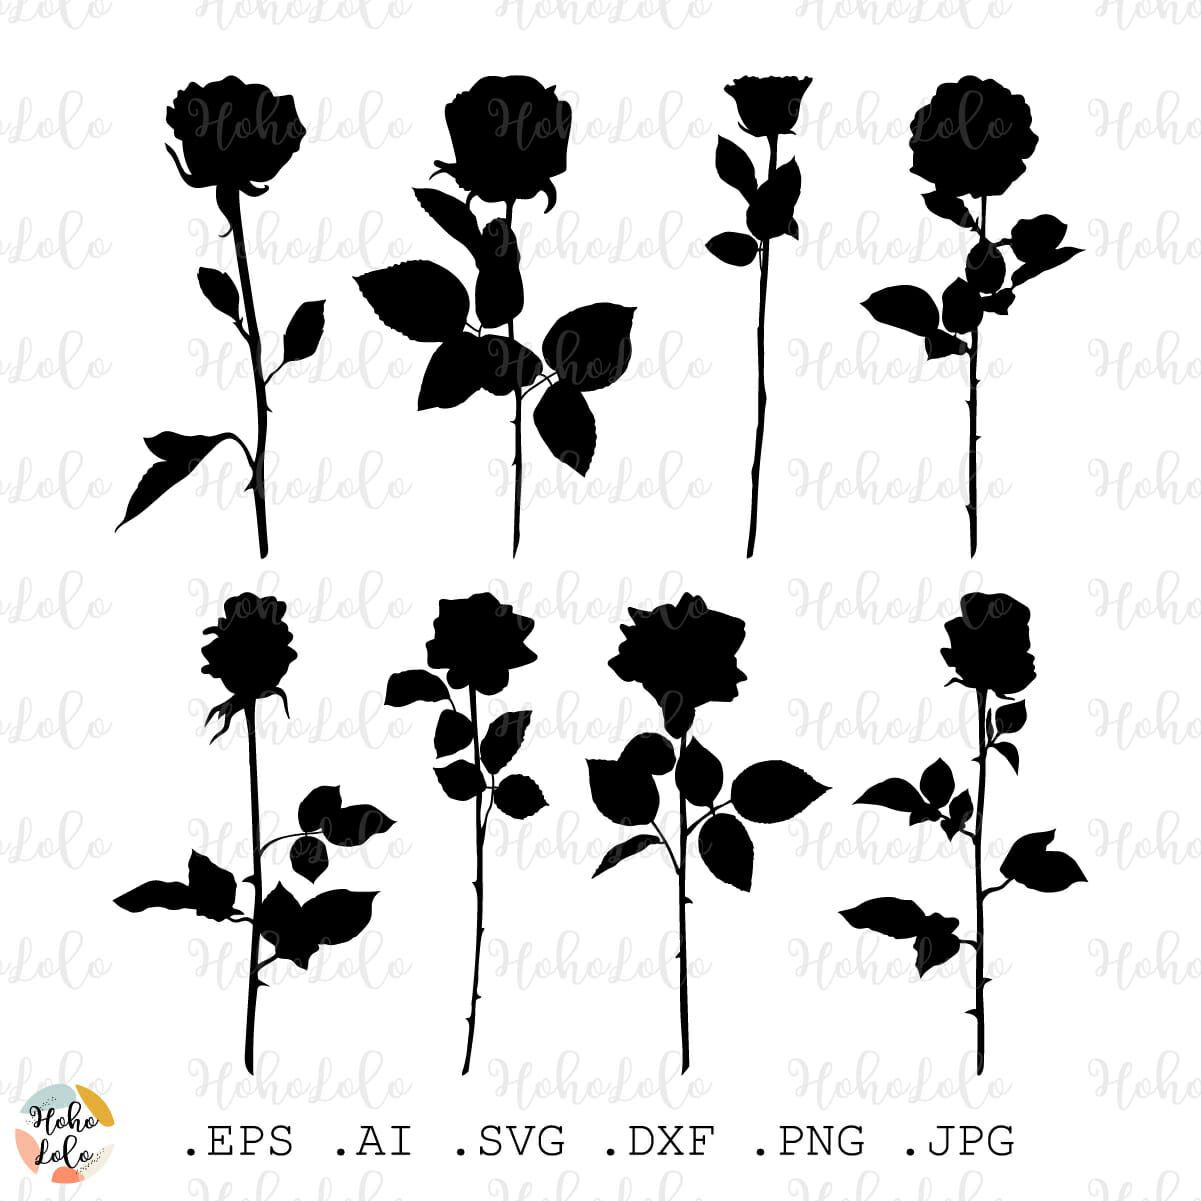 Rose Flower SVG, DXF, EPS, PNG, Love Rose SVG, Roses